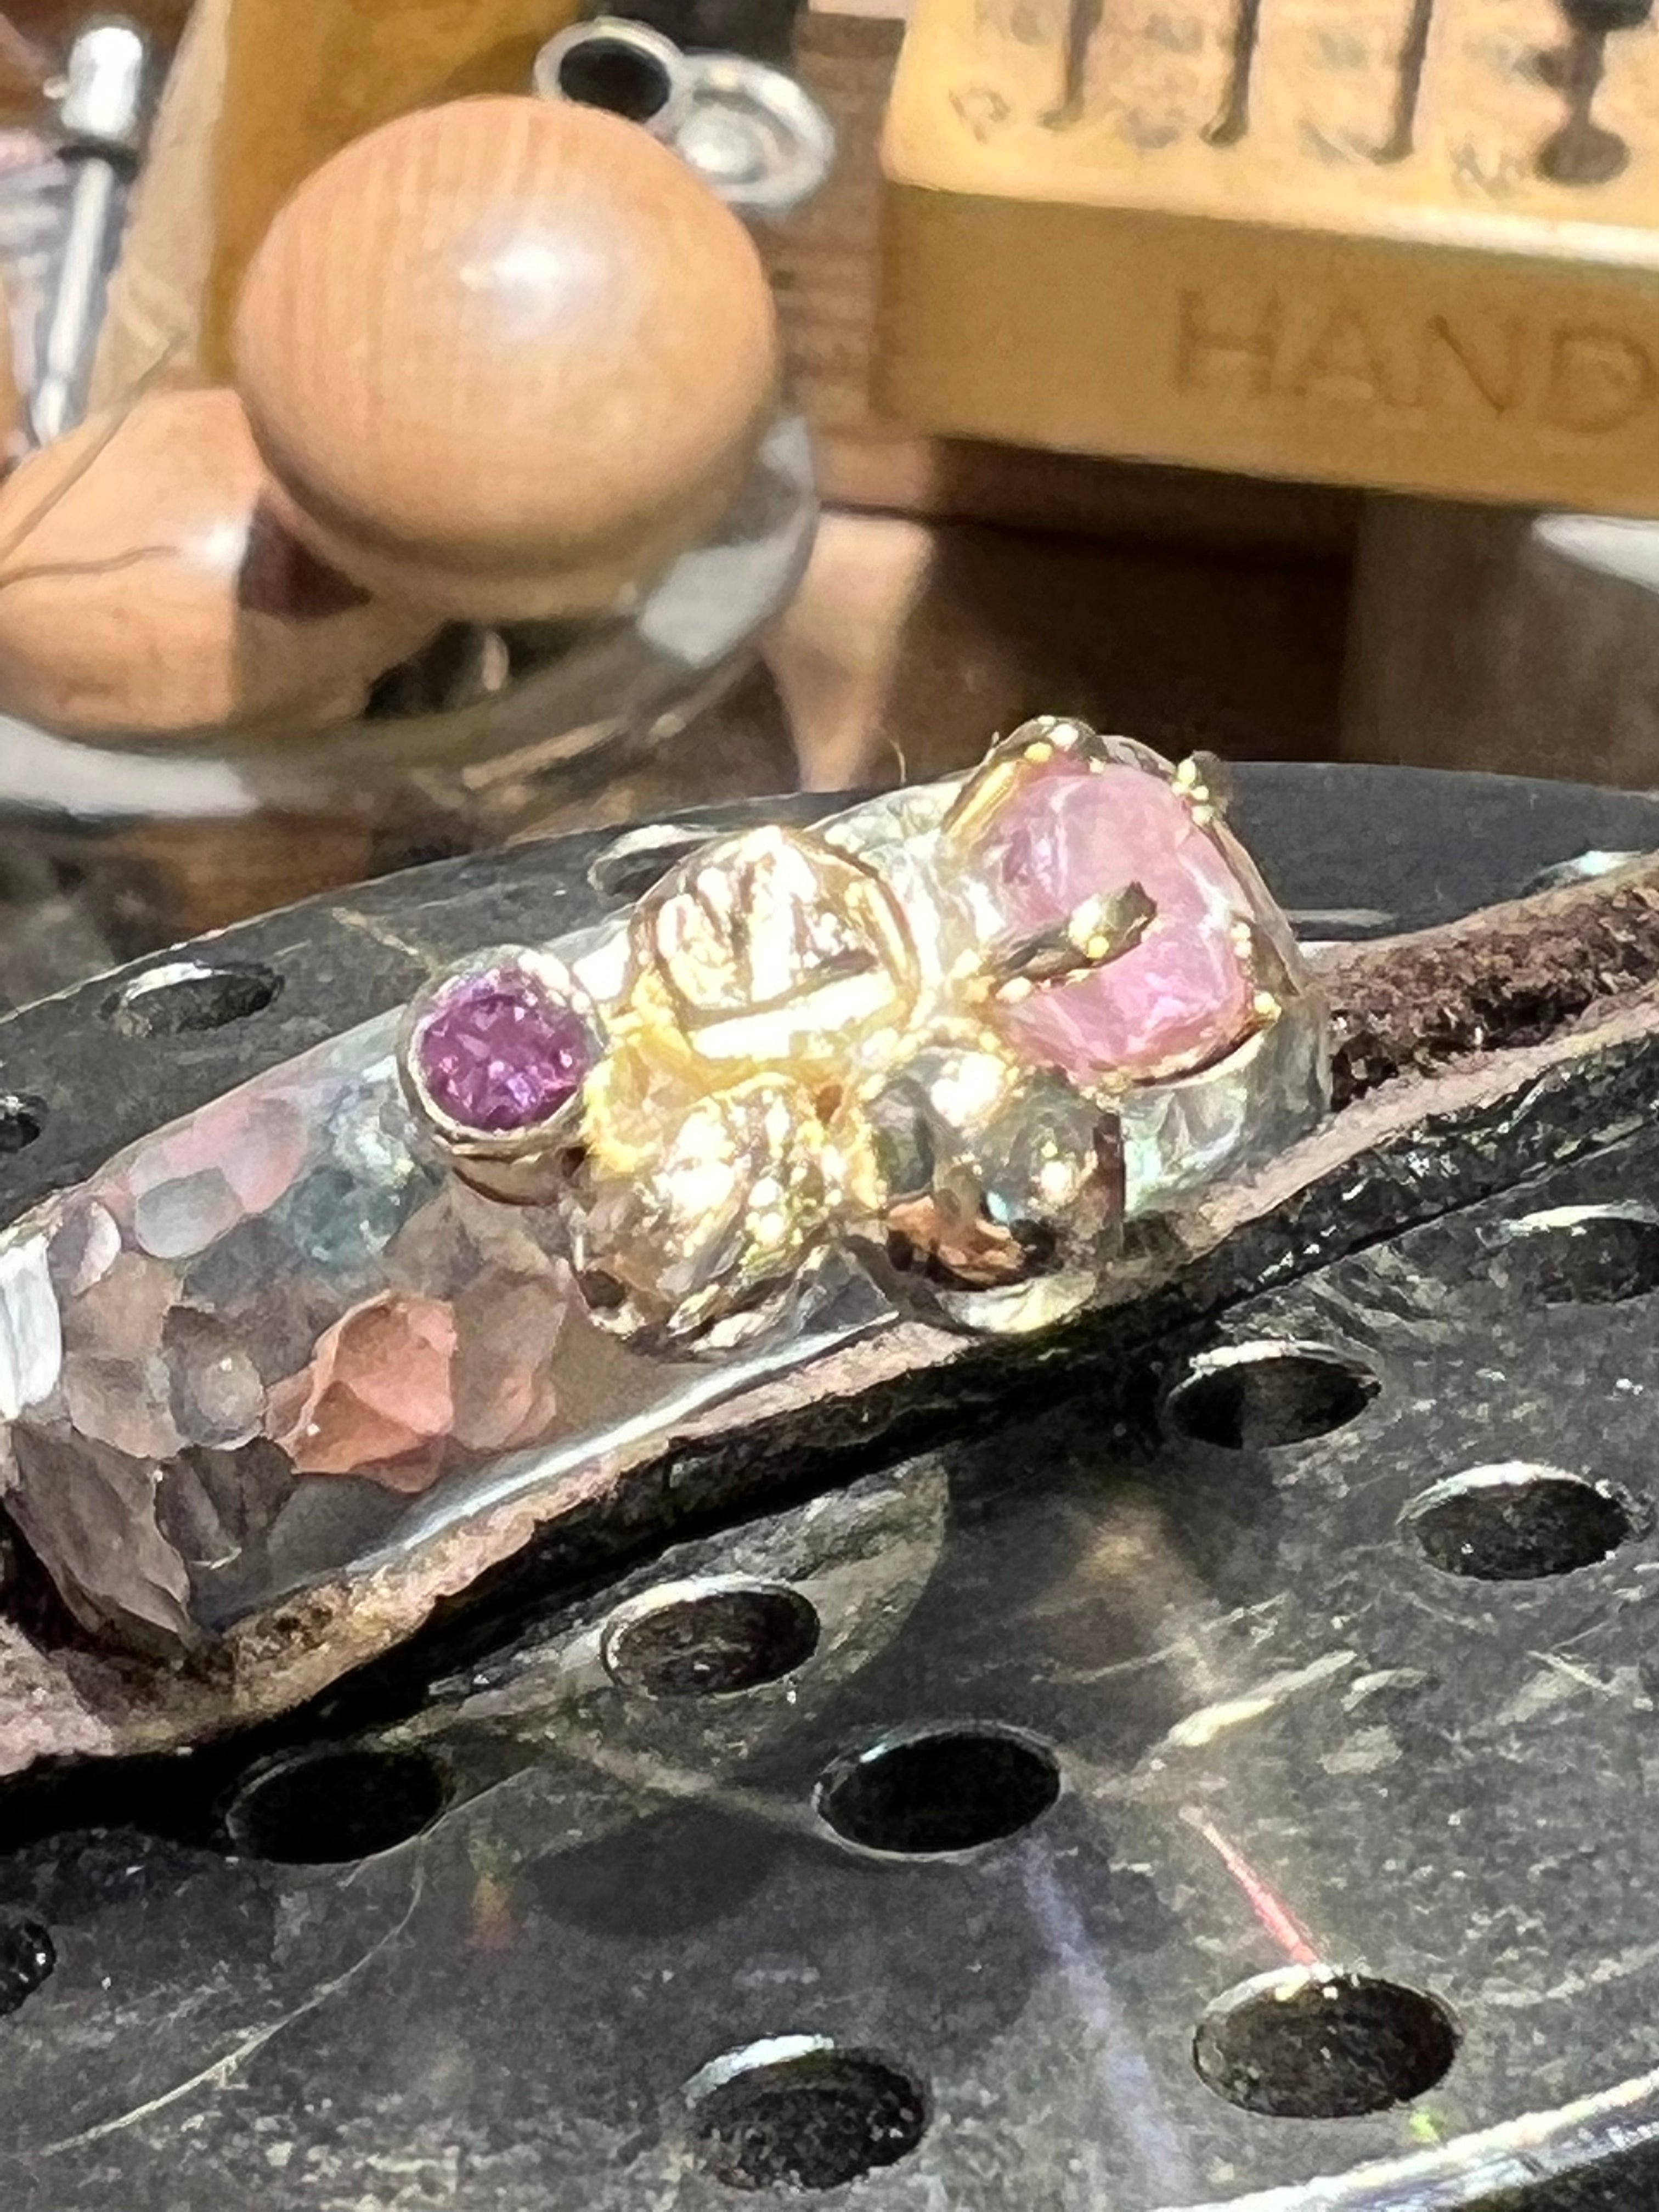 Pink safir ring i sølv med guldkugler